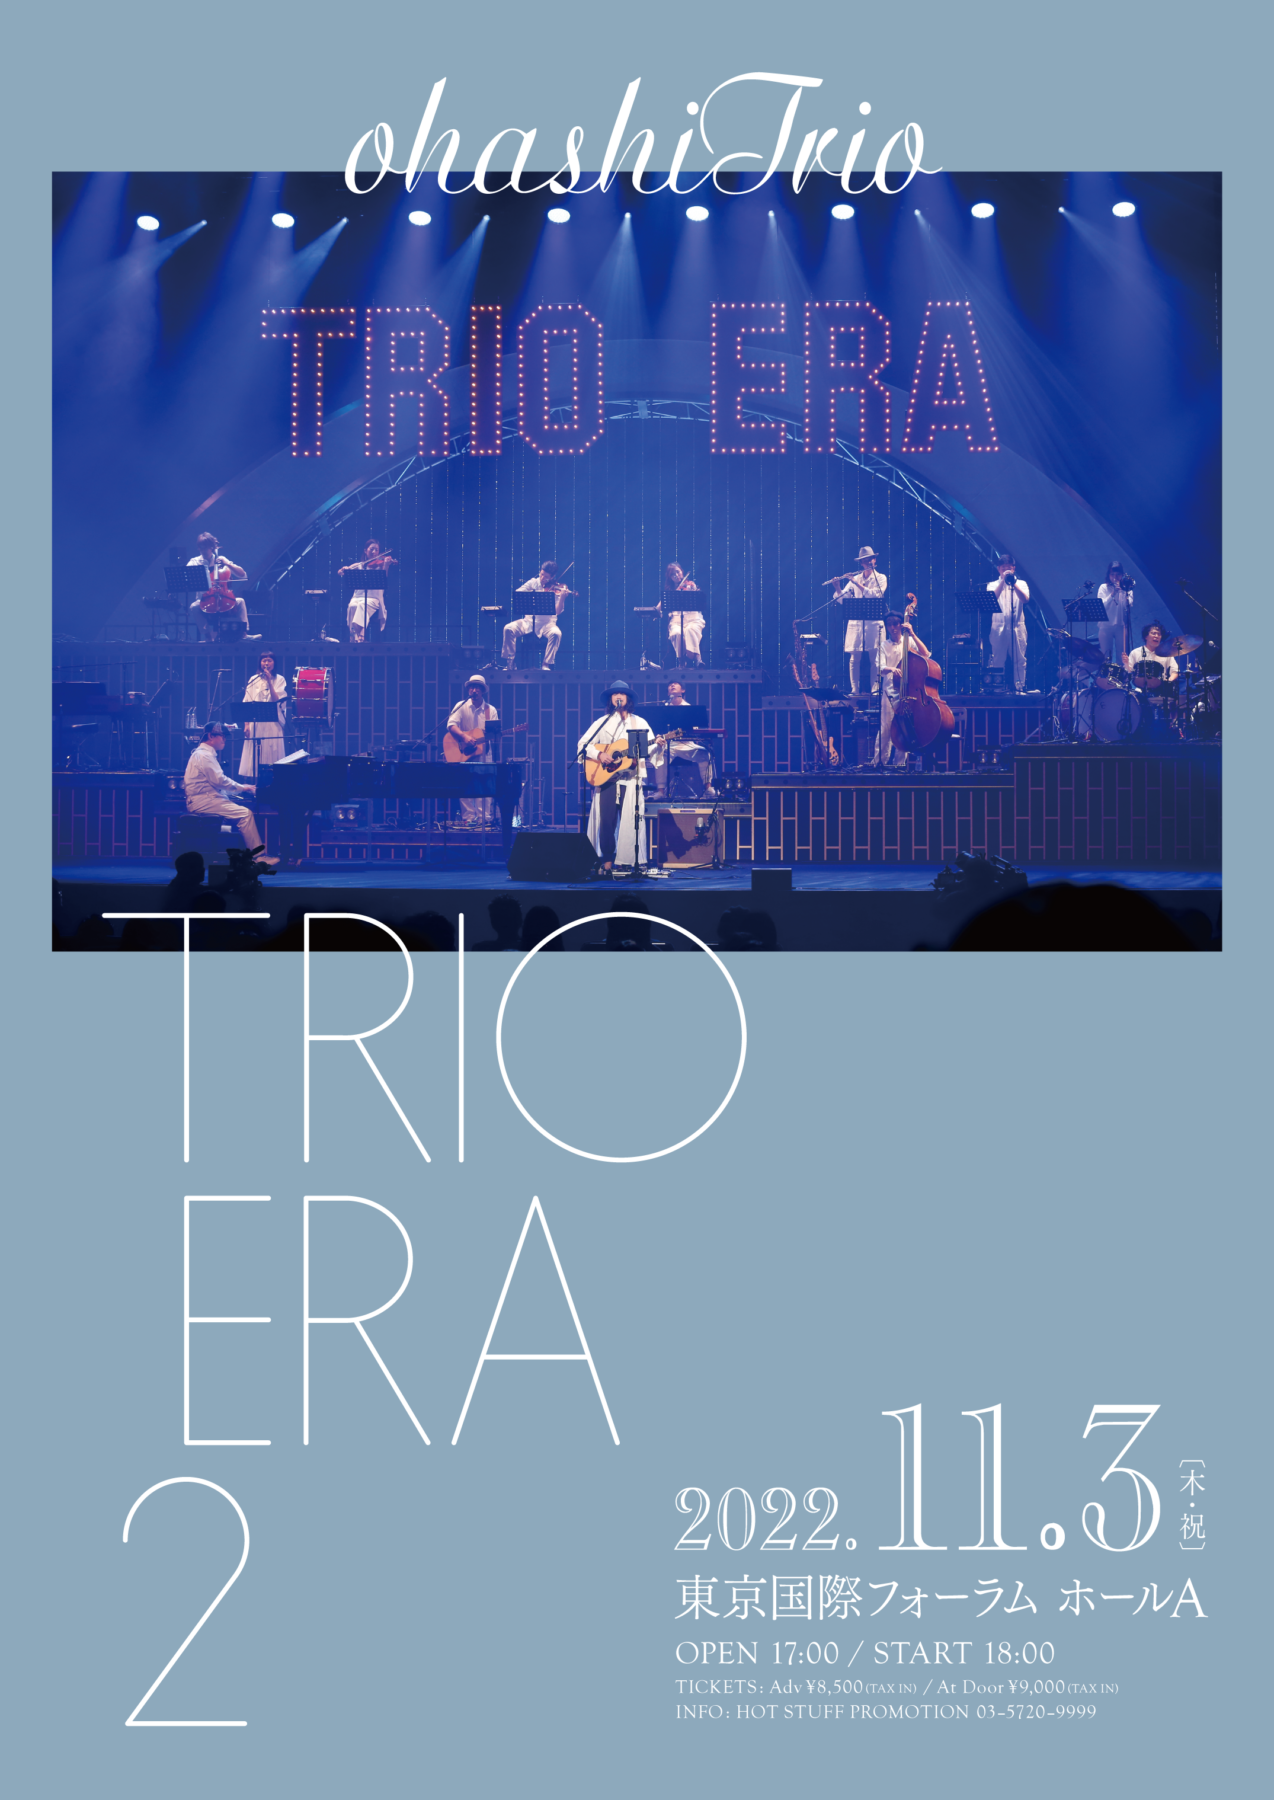 大橋トリオデビュー15周年記念アニバーサリー公演「TRIO ERA 2」